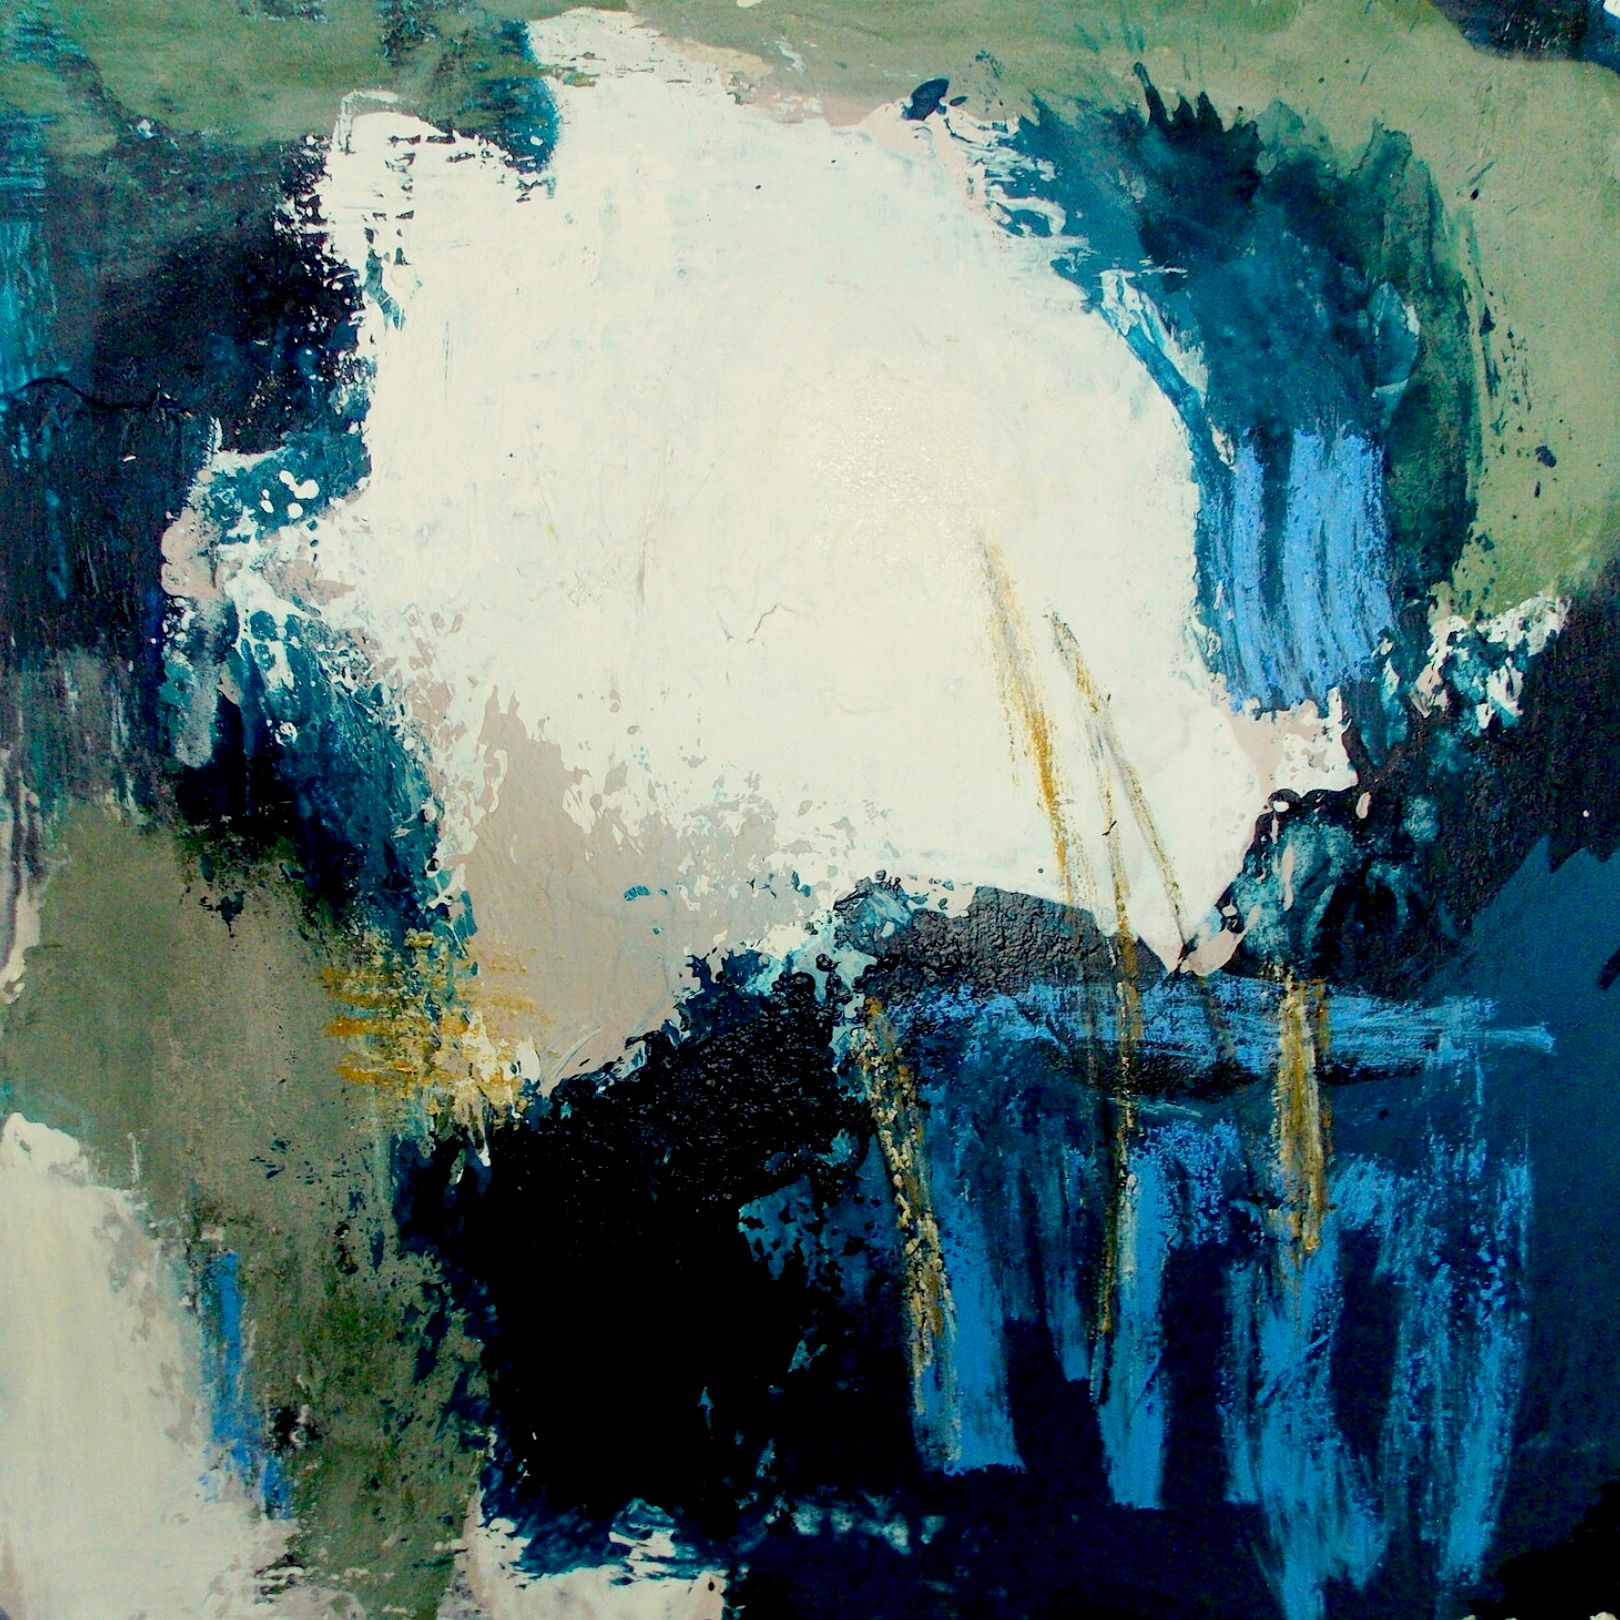 En la pintura expresionista, abstracta y colorista "Fronteras y horizontes" de Christa Haack dominan los colores azul oscuro, verde, rosa viejo y blanco sobre un fondo gris verdoso.